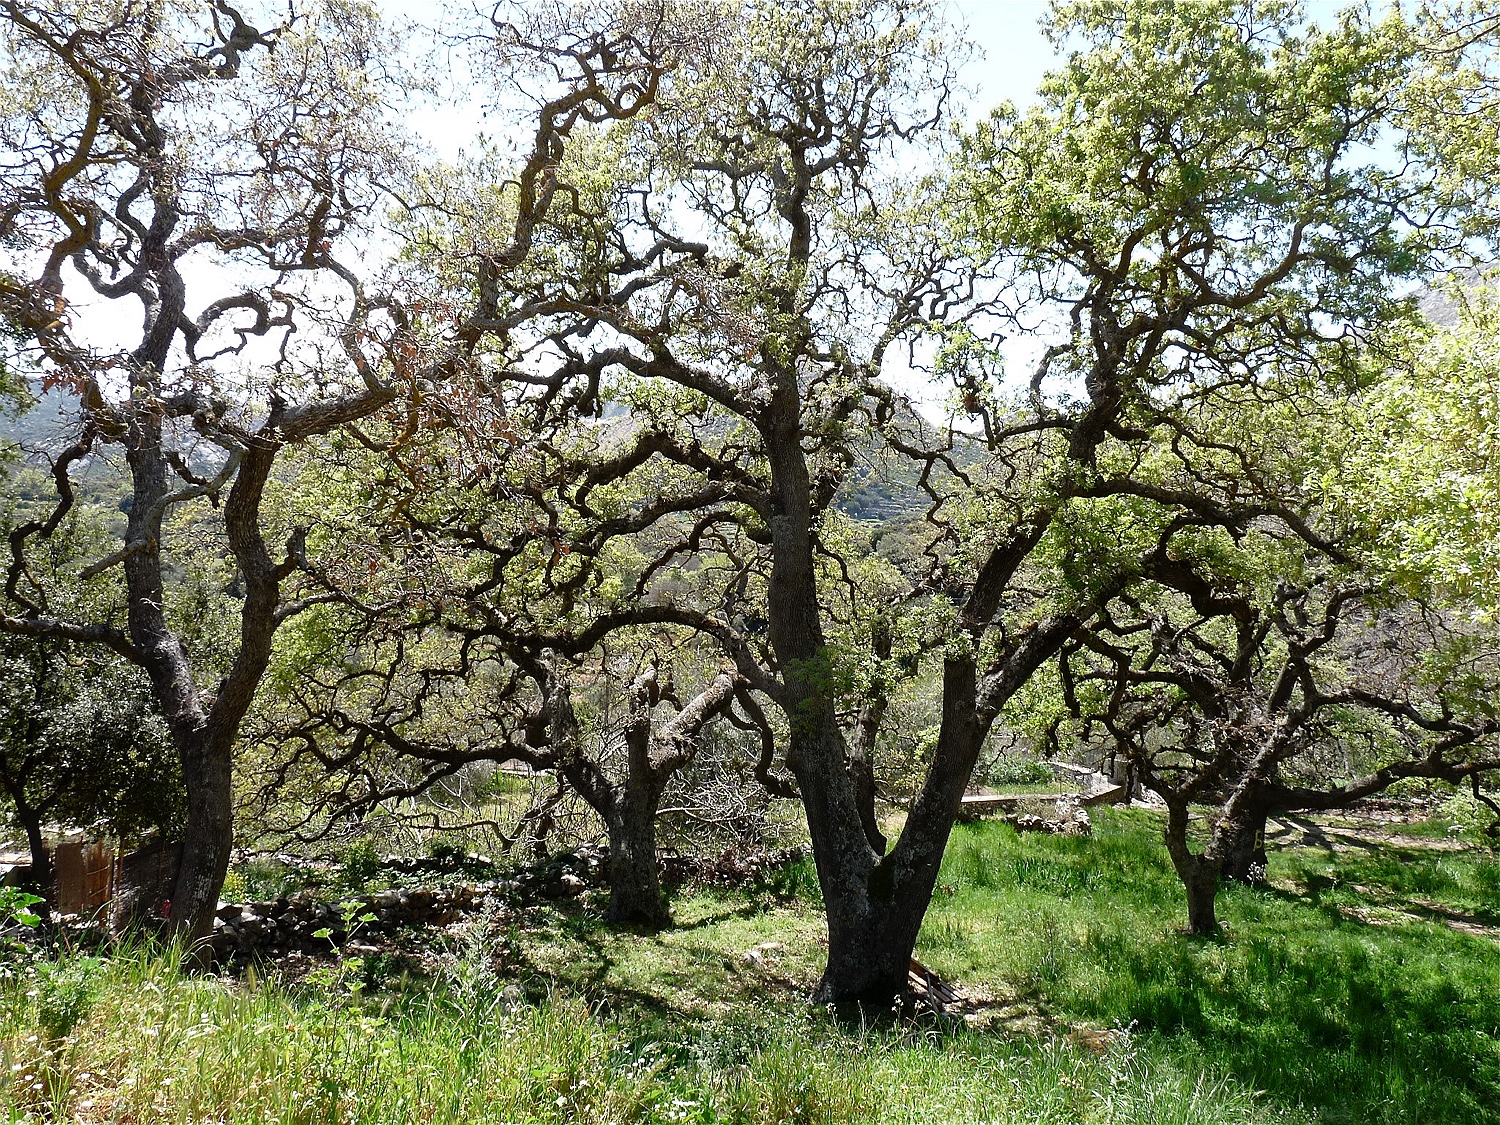 Flaumeiche, Quercus pubescens